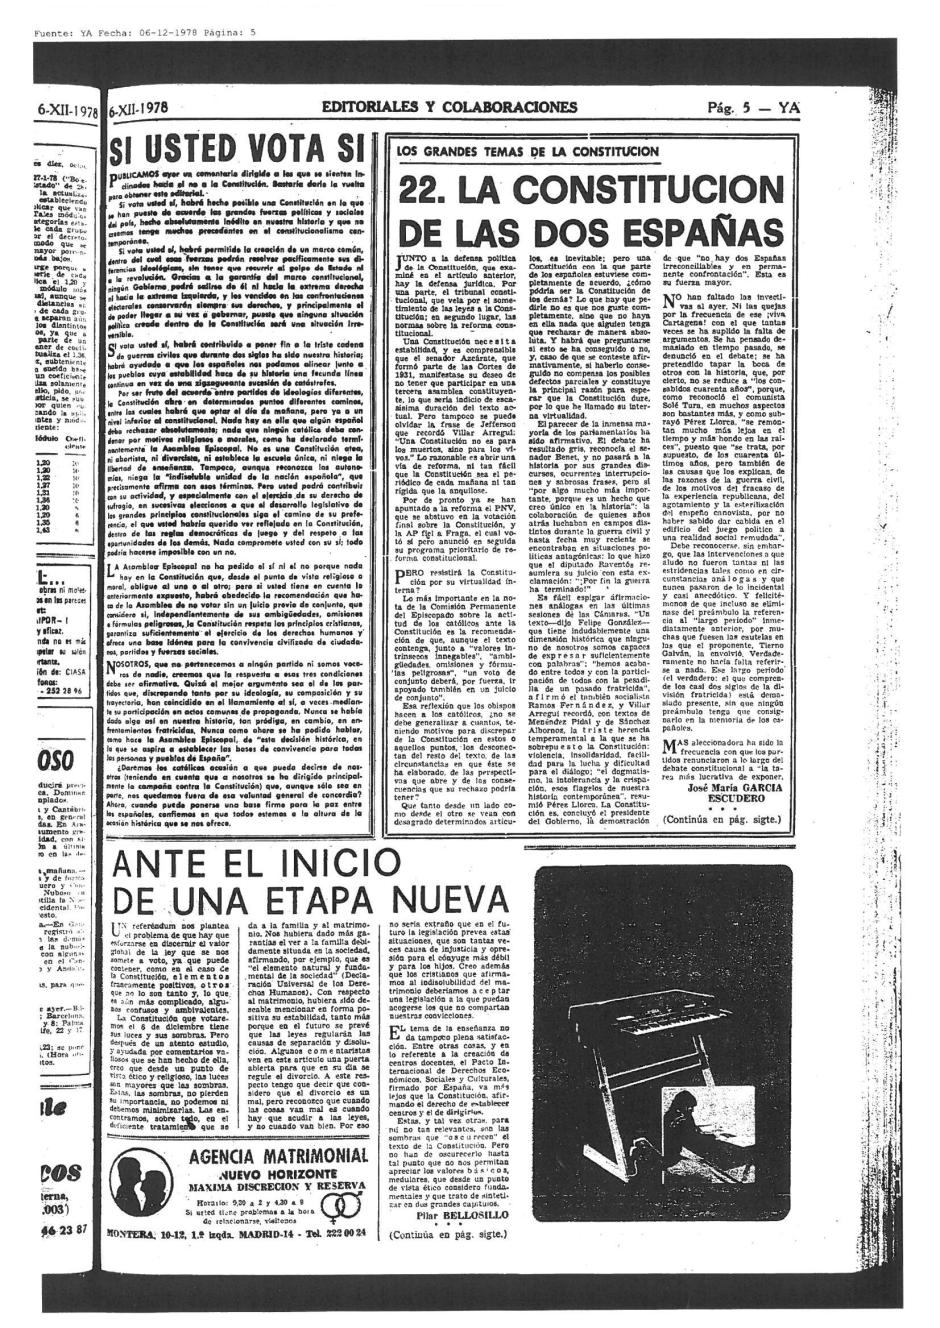 La constitución de las dos Españas en el Ya - 6 de Diciembre de 1978